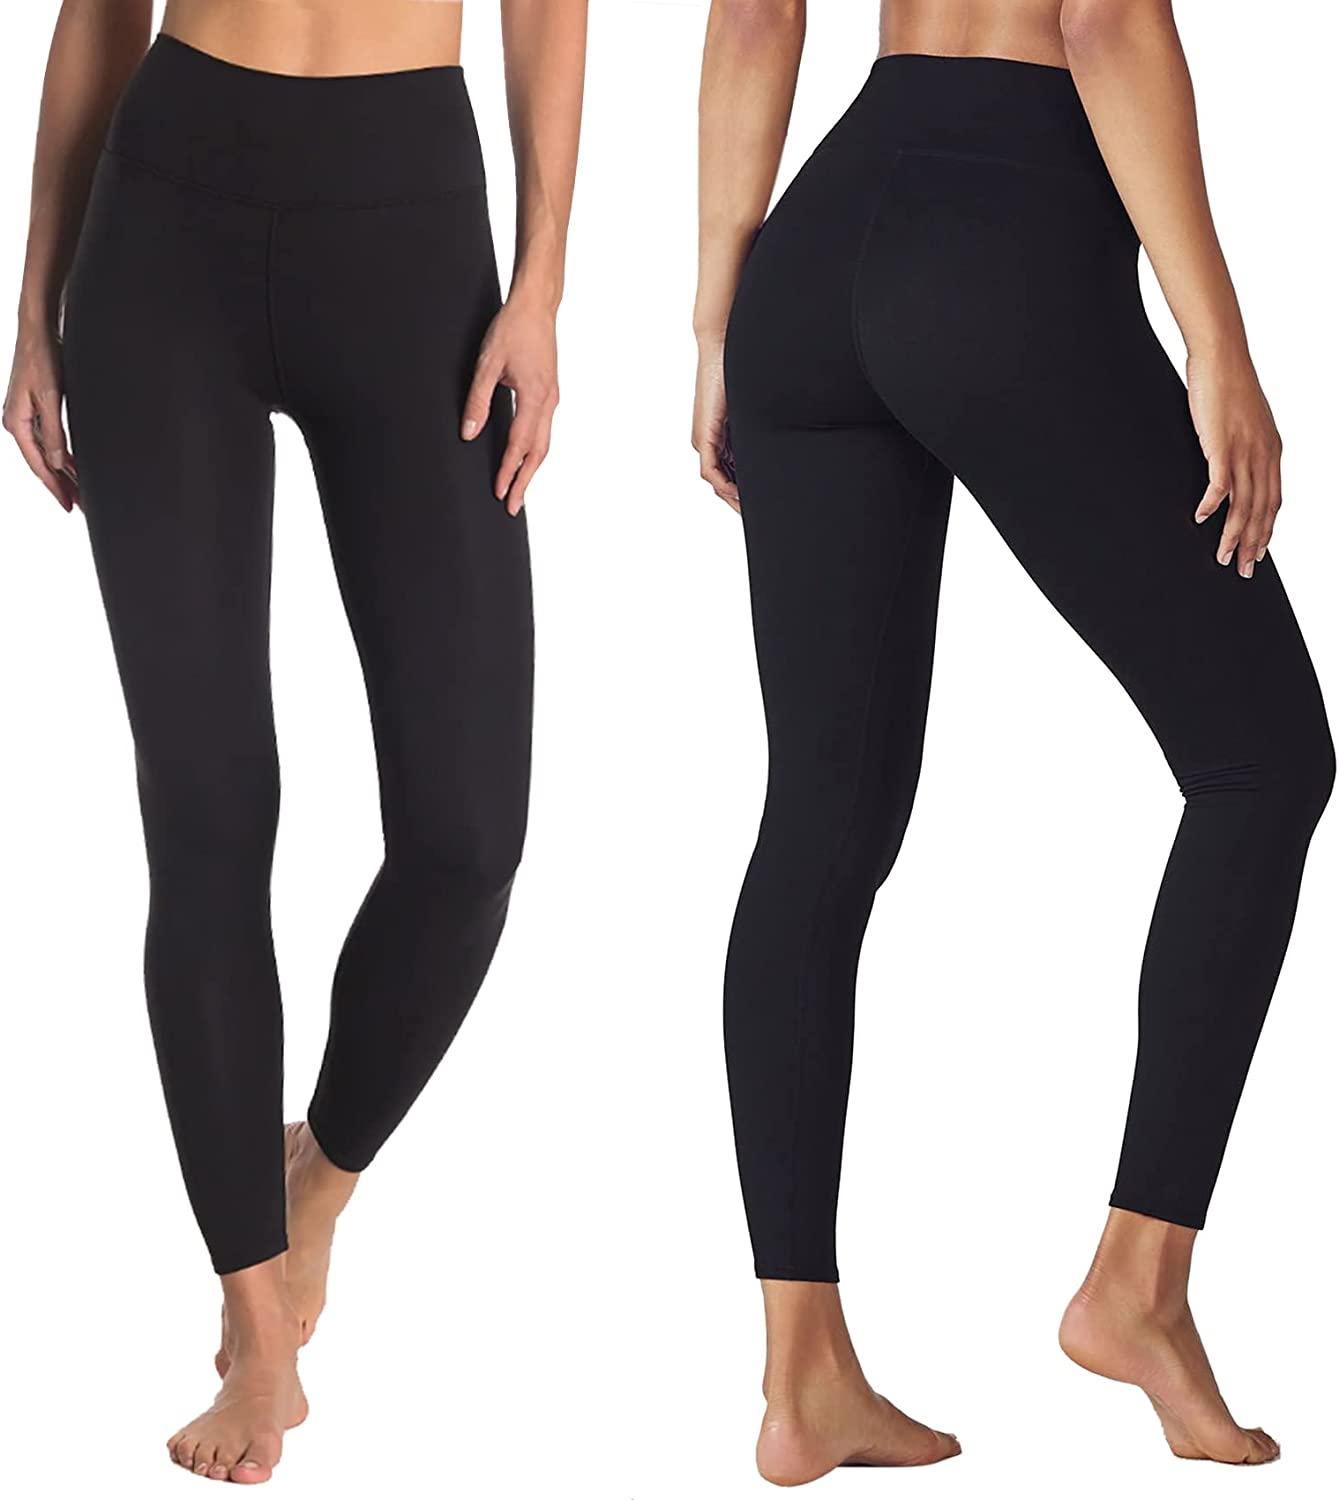 Buy GAYHAY High Waisted Capri Leggings for Women - Soft Slim Yoga